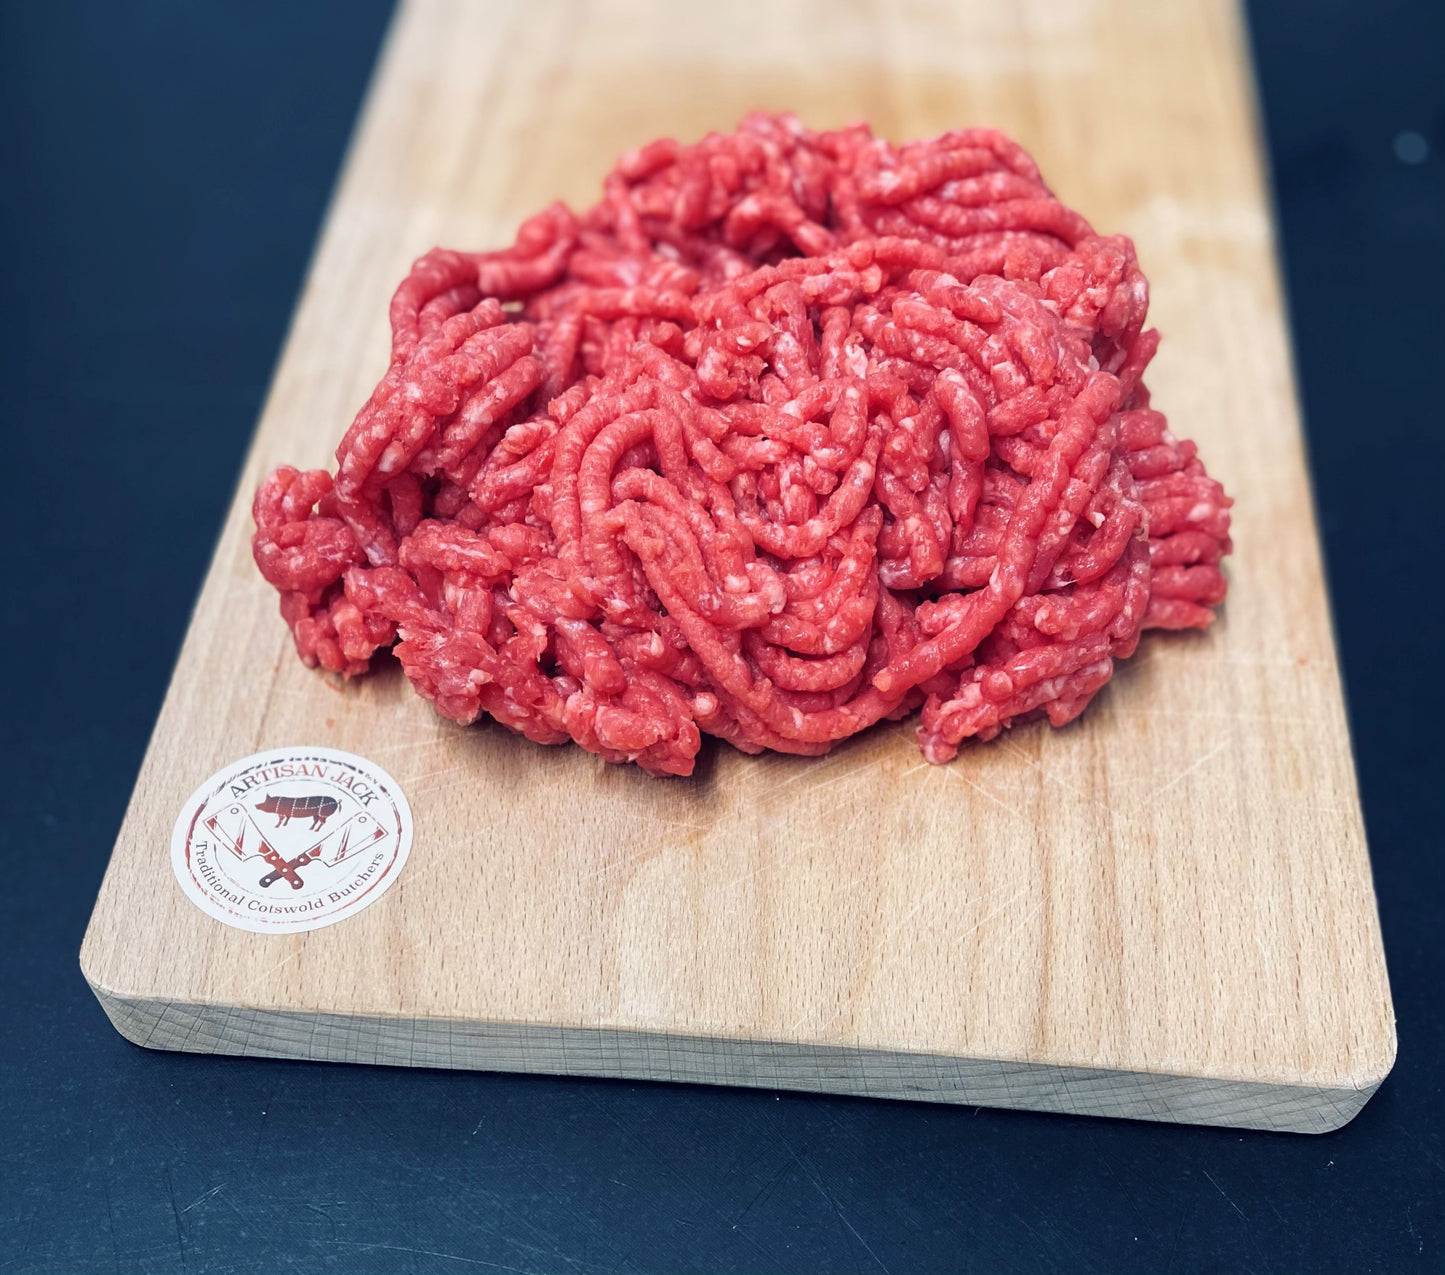 Beef Steak Mince (5-10% fat)